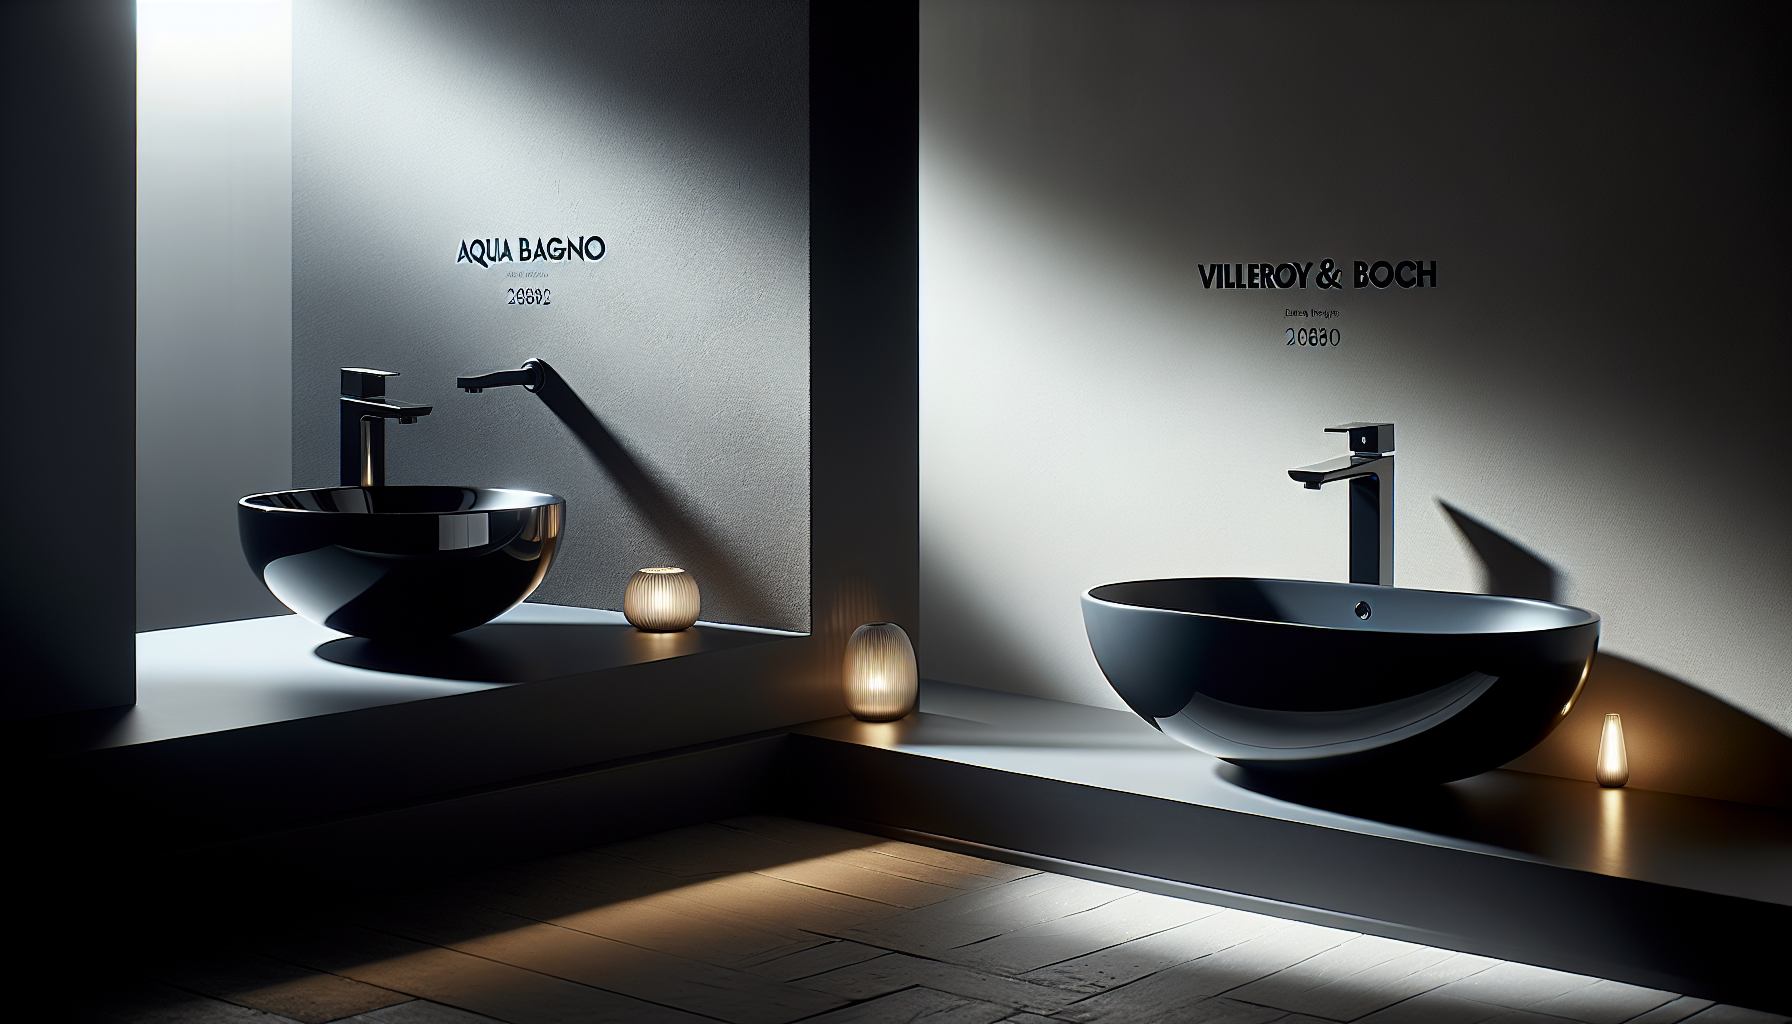 Beliebte Marken für schwarze Waschbecken: Aqua Bagno und Villeroy & Boch